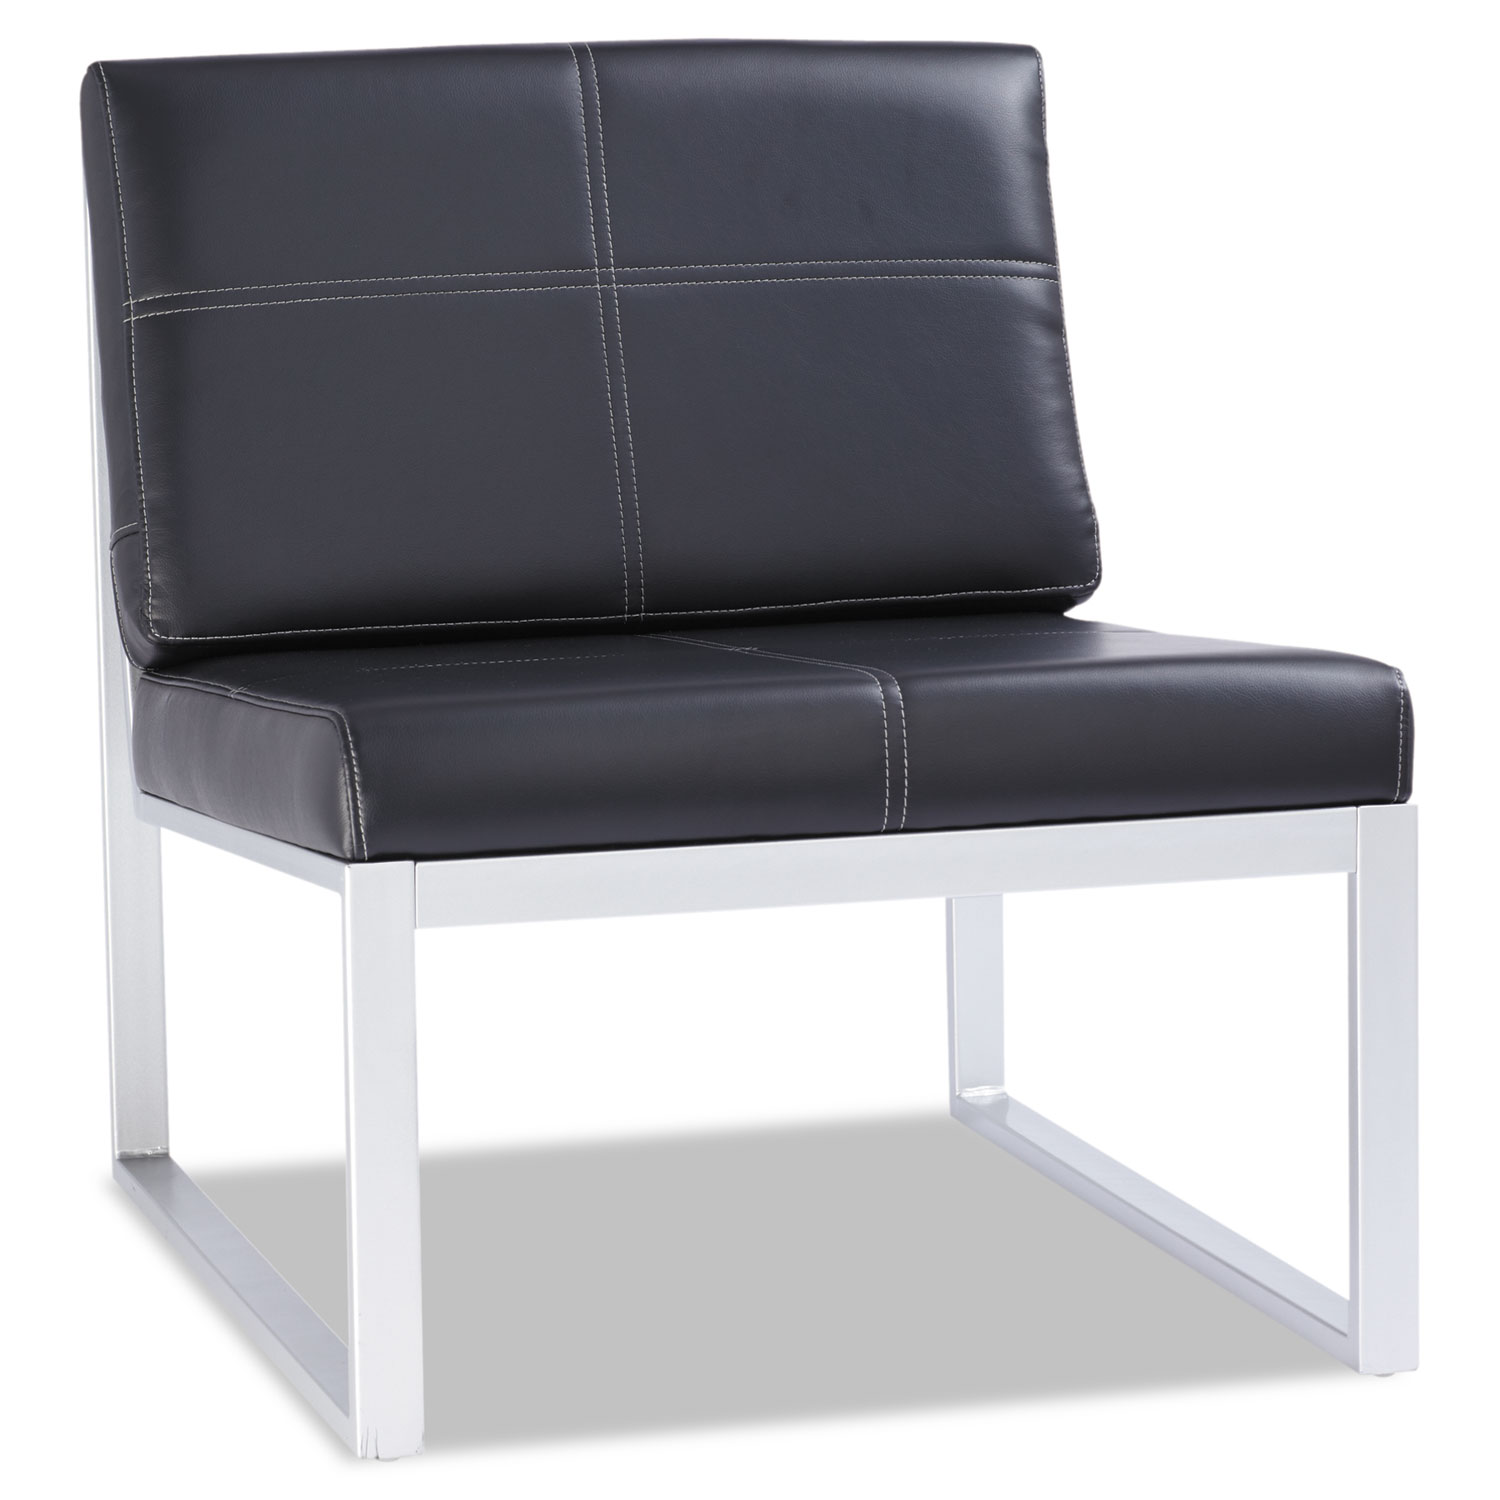 Alera Ispara Series Armless Cube Chair, 26-3/8 x 31-1/8 x 30, Black/Silver